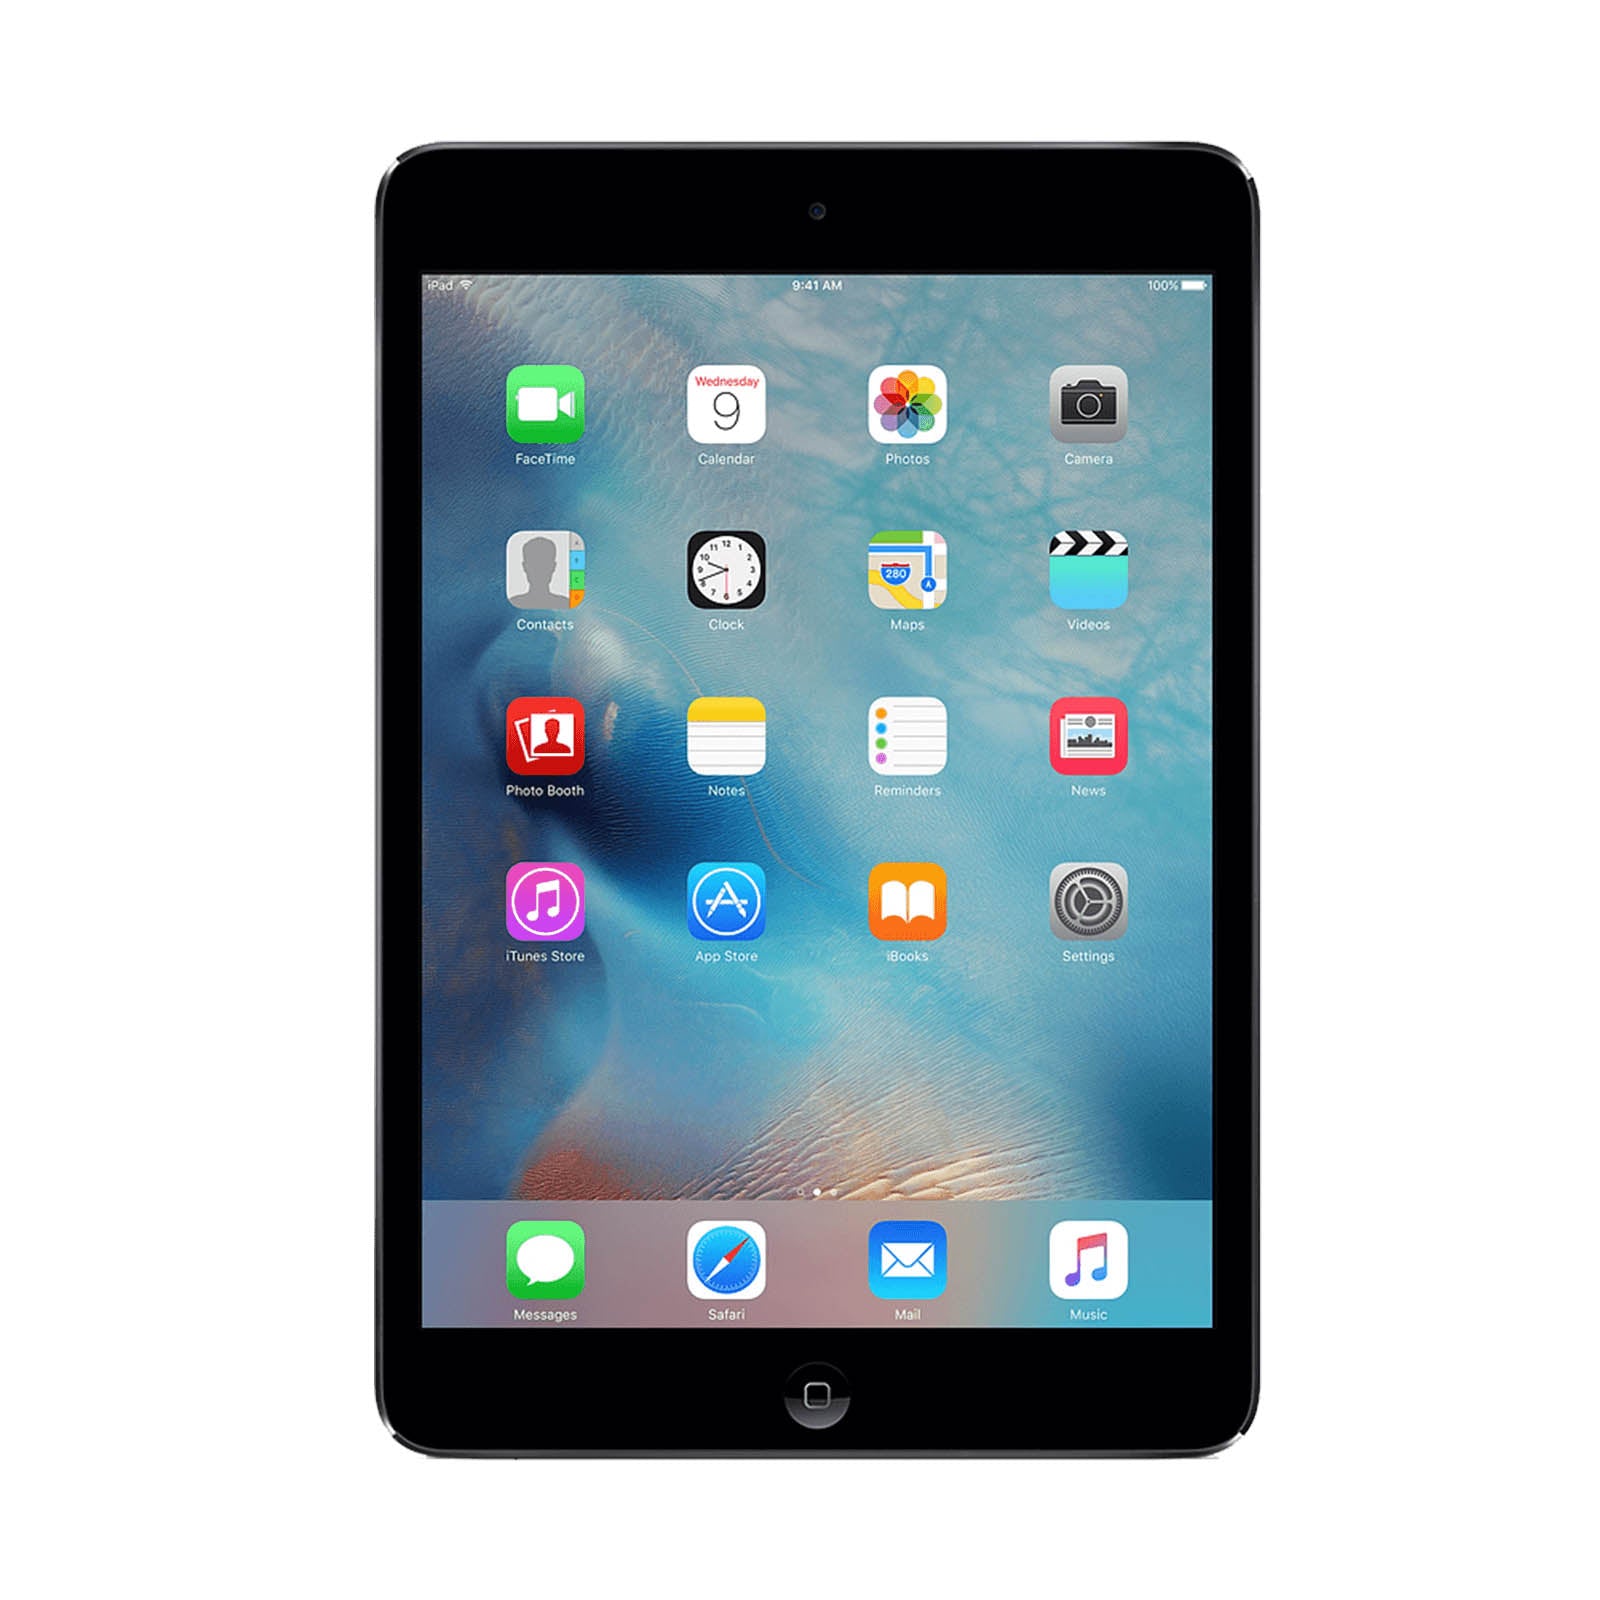 Apple iPad mini 2 32GB Black Very Good - Unlocked